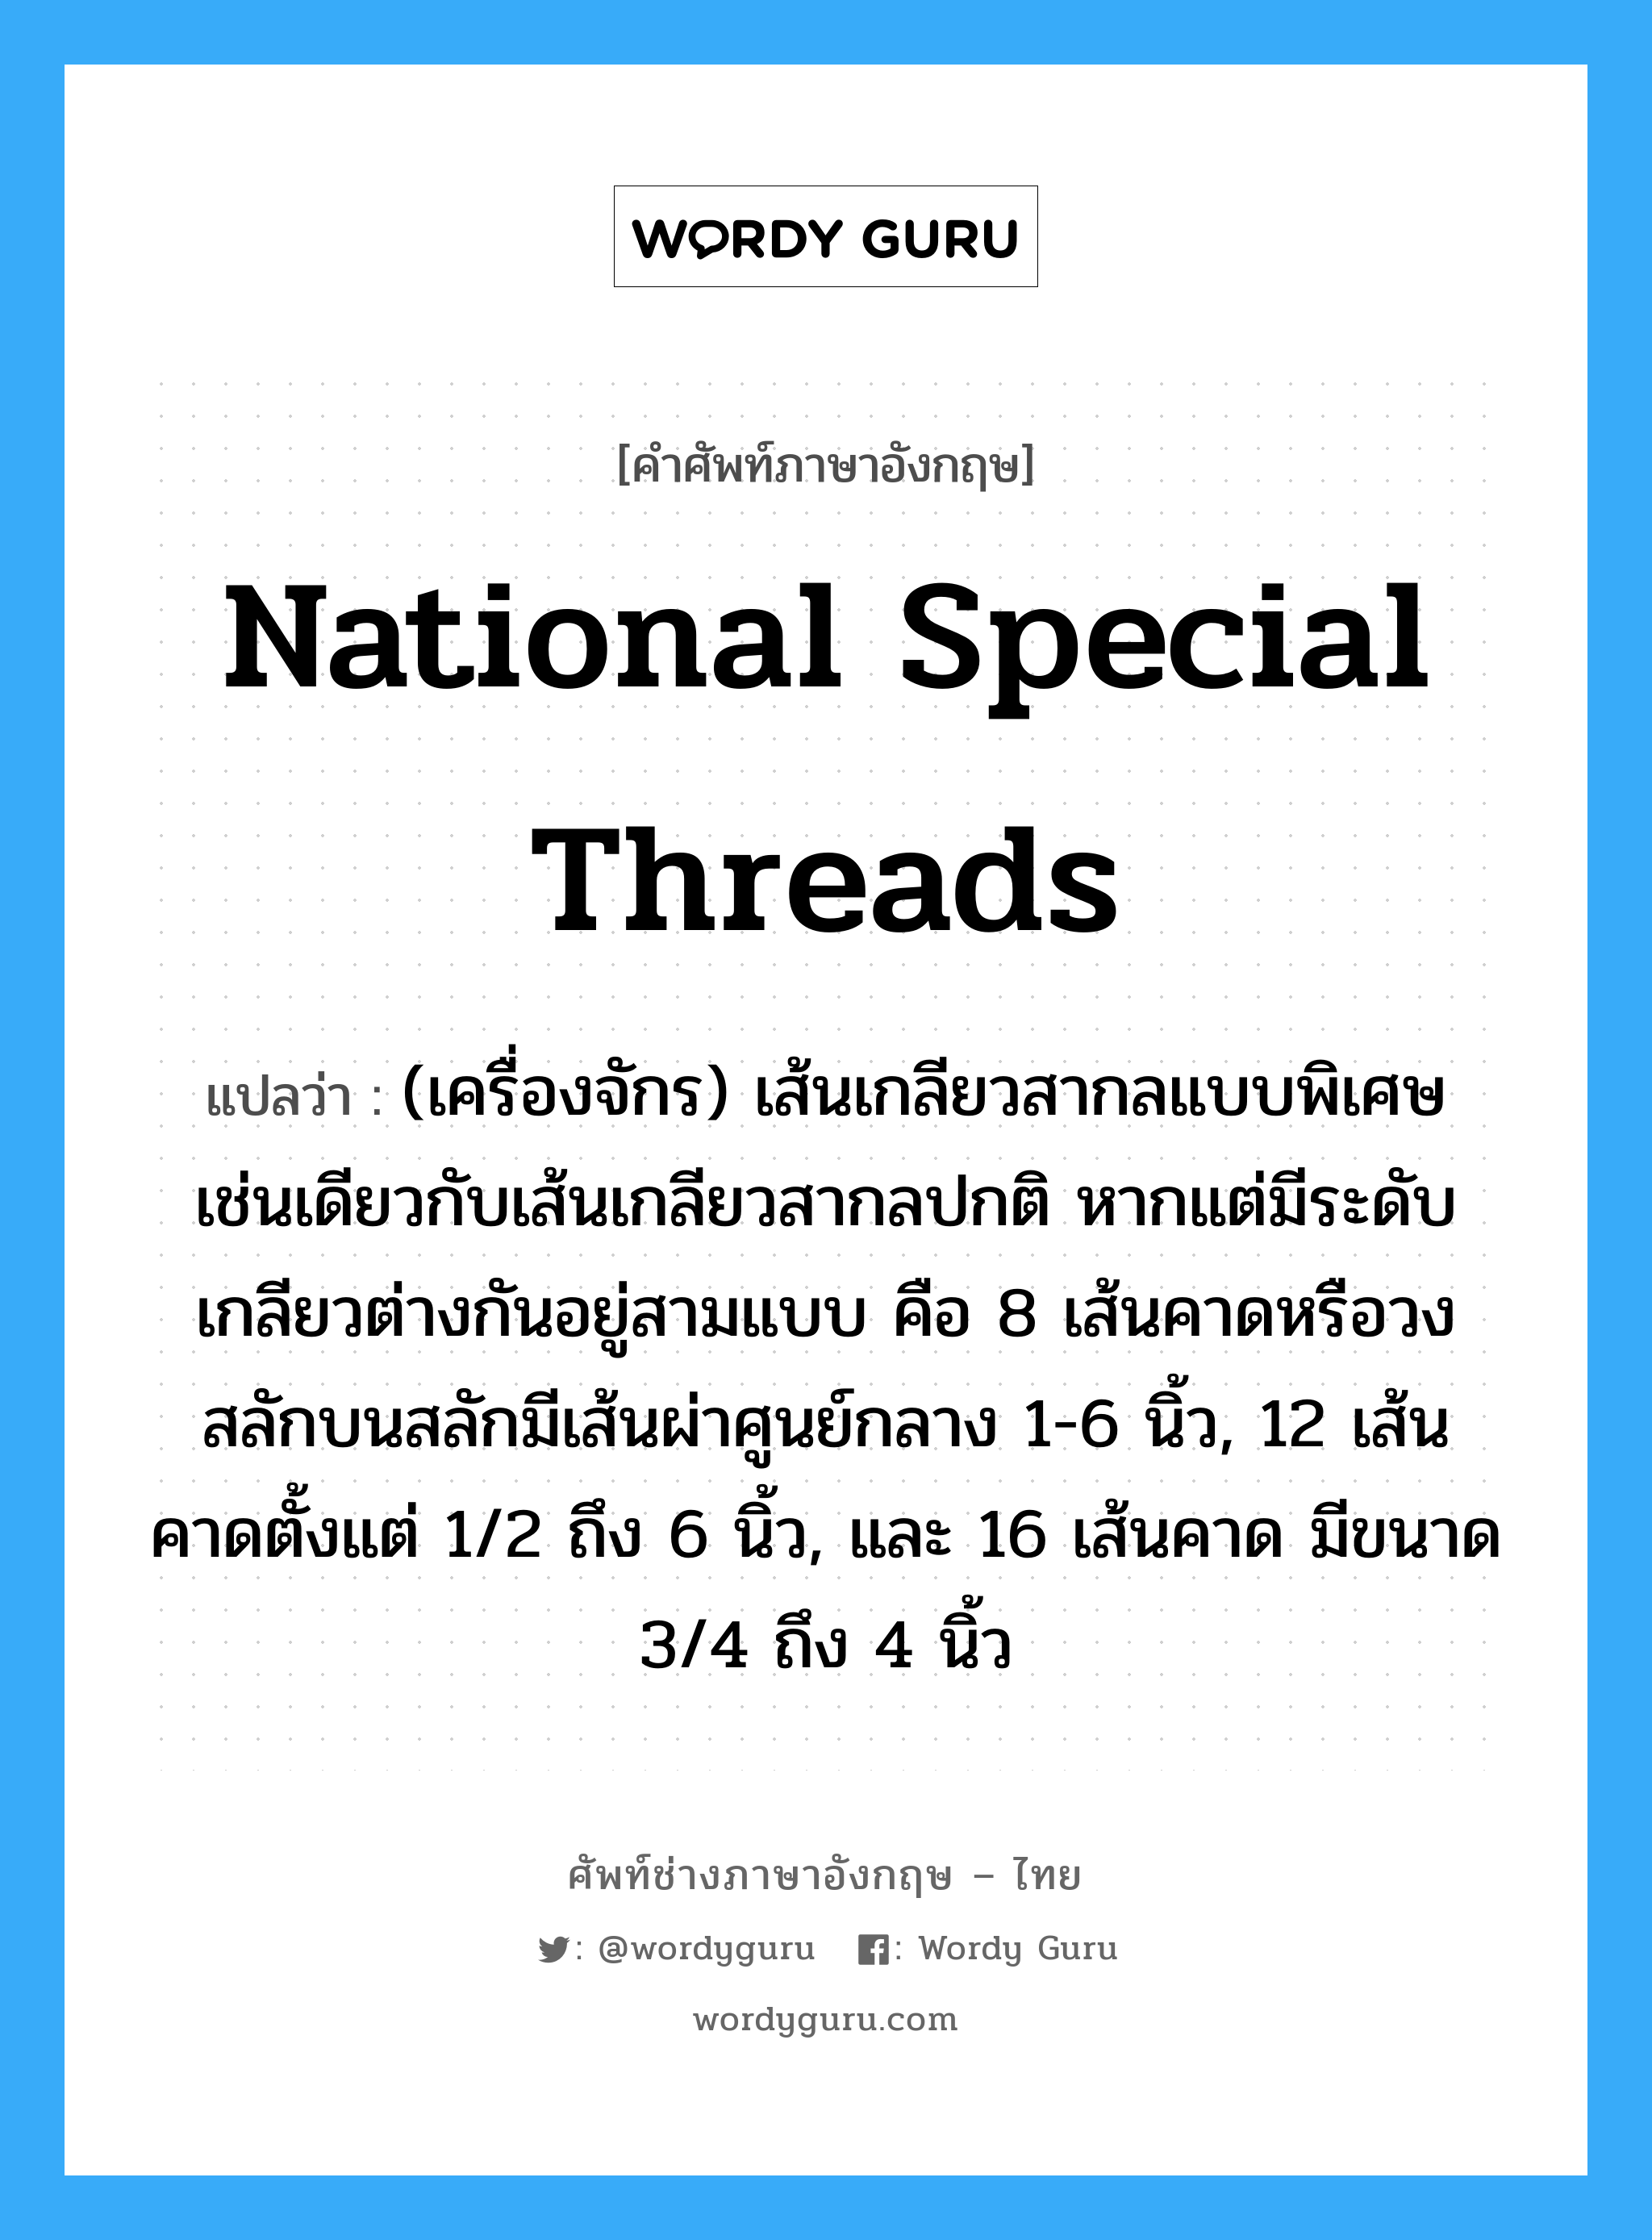 National Special threads แปลว่า?, คำศัพท์ช่างภาษาอังกฤษ - ไทย National Special threads คำศัพท์ภาษาอังกฤษ National Special threads แปลว่า (เครื่องจักร) เส้นเกลียวสากลแบบพิเศษ เช่นเดียวกับเส้นเกลียวสากลปกติ หากแต่มีระดับเกลียวต่างกันอยู่สามแบบ คือ 8 เส้นคาดหรือวงสลักบนสลักมีเส้นผ่าศูนย์กลาง 1-6 นิ้ว, 12 เส้นคาดตั้งแต่ 1/2 ถึง 6 นิ้ว, และ 16 เส้นคาด มีขนาด 3/4 ถึง 4 นิ้ว